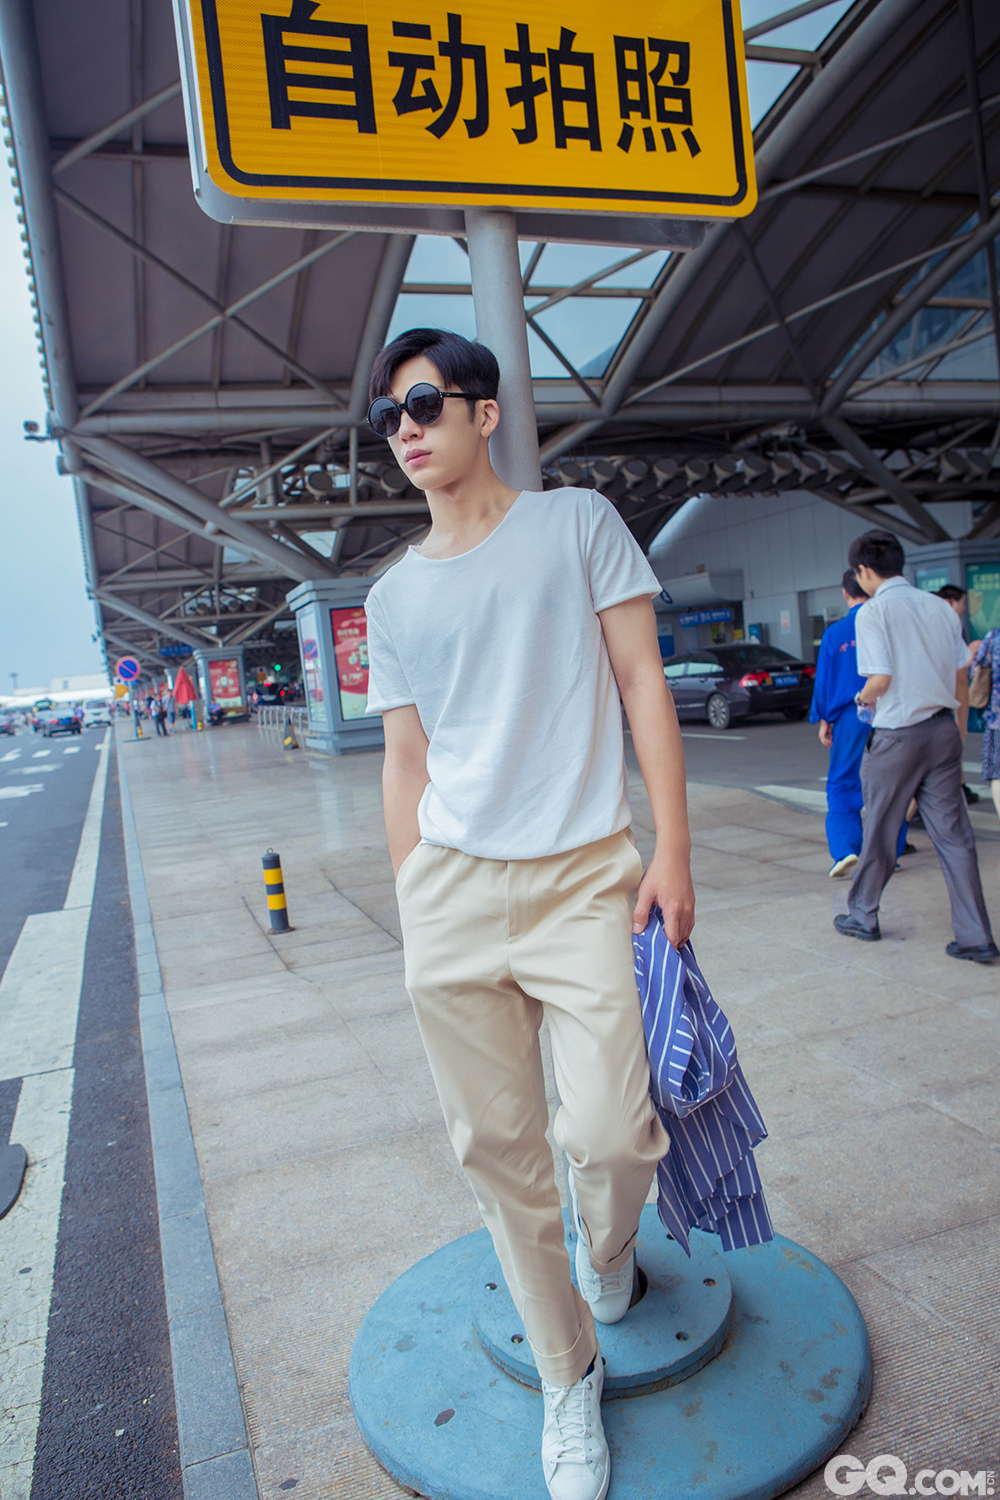 近日，井柏然现身首都机场启程前往韩国首尔录制江苏卫视综艺节目《我们战斗吧》。井柏然上衣身穿简约白色T恤外罩蓝白条纹衬衫，搭配米色休闲长裤，脚踩小白鞋亮相，休闲又不失时尚感，白色与蓝色系的搭配也成为这炎热夏日里的一抹清爽色调，干净而又宁静。当天抵达韩国金浦机场后，井柏然“路痴”属性再次显露，出关后执着往安保人员引导的反方向后，被网友大呼“呆萌”！